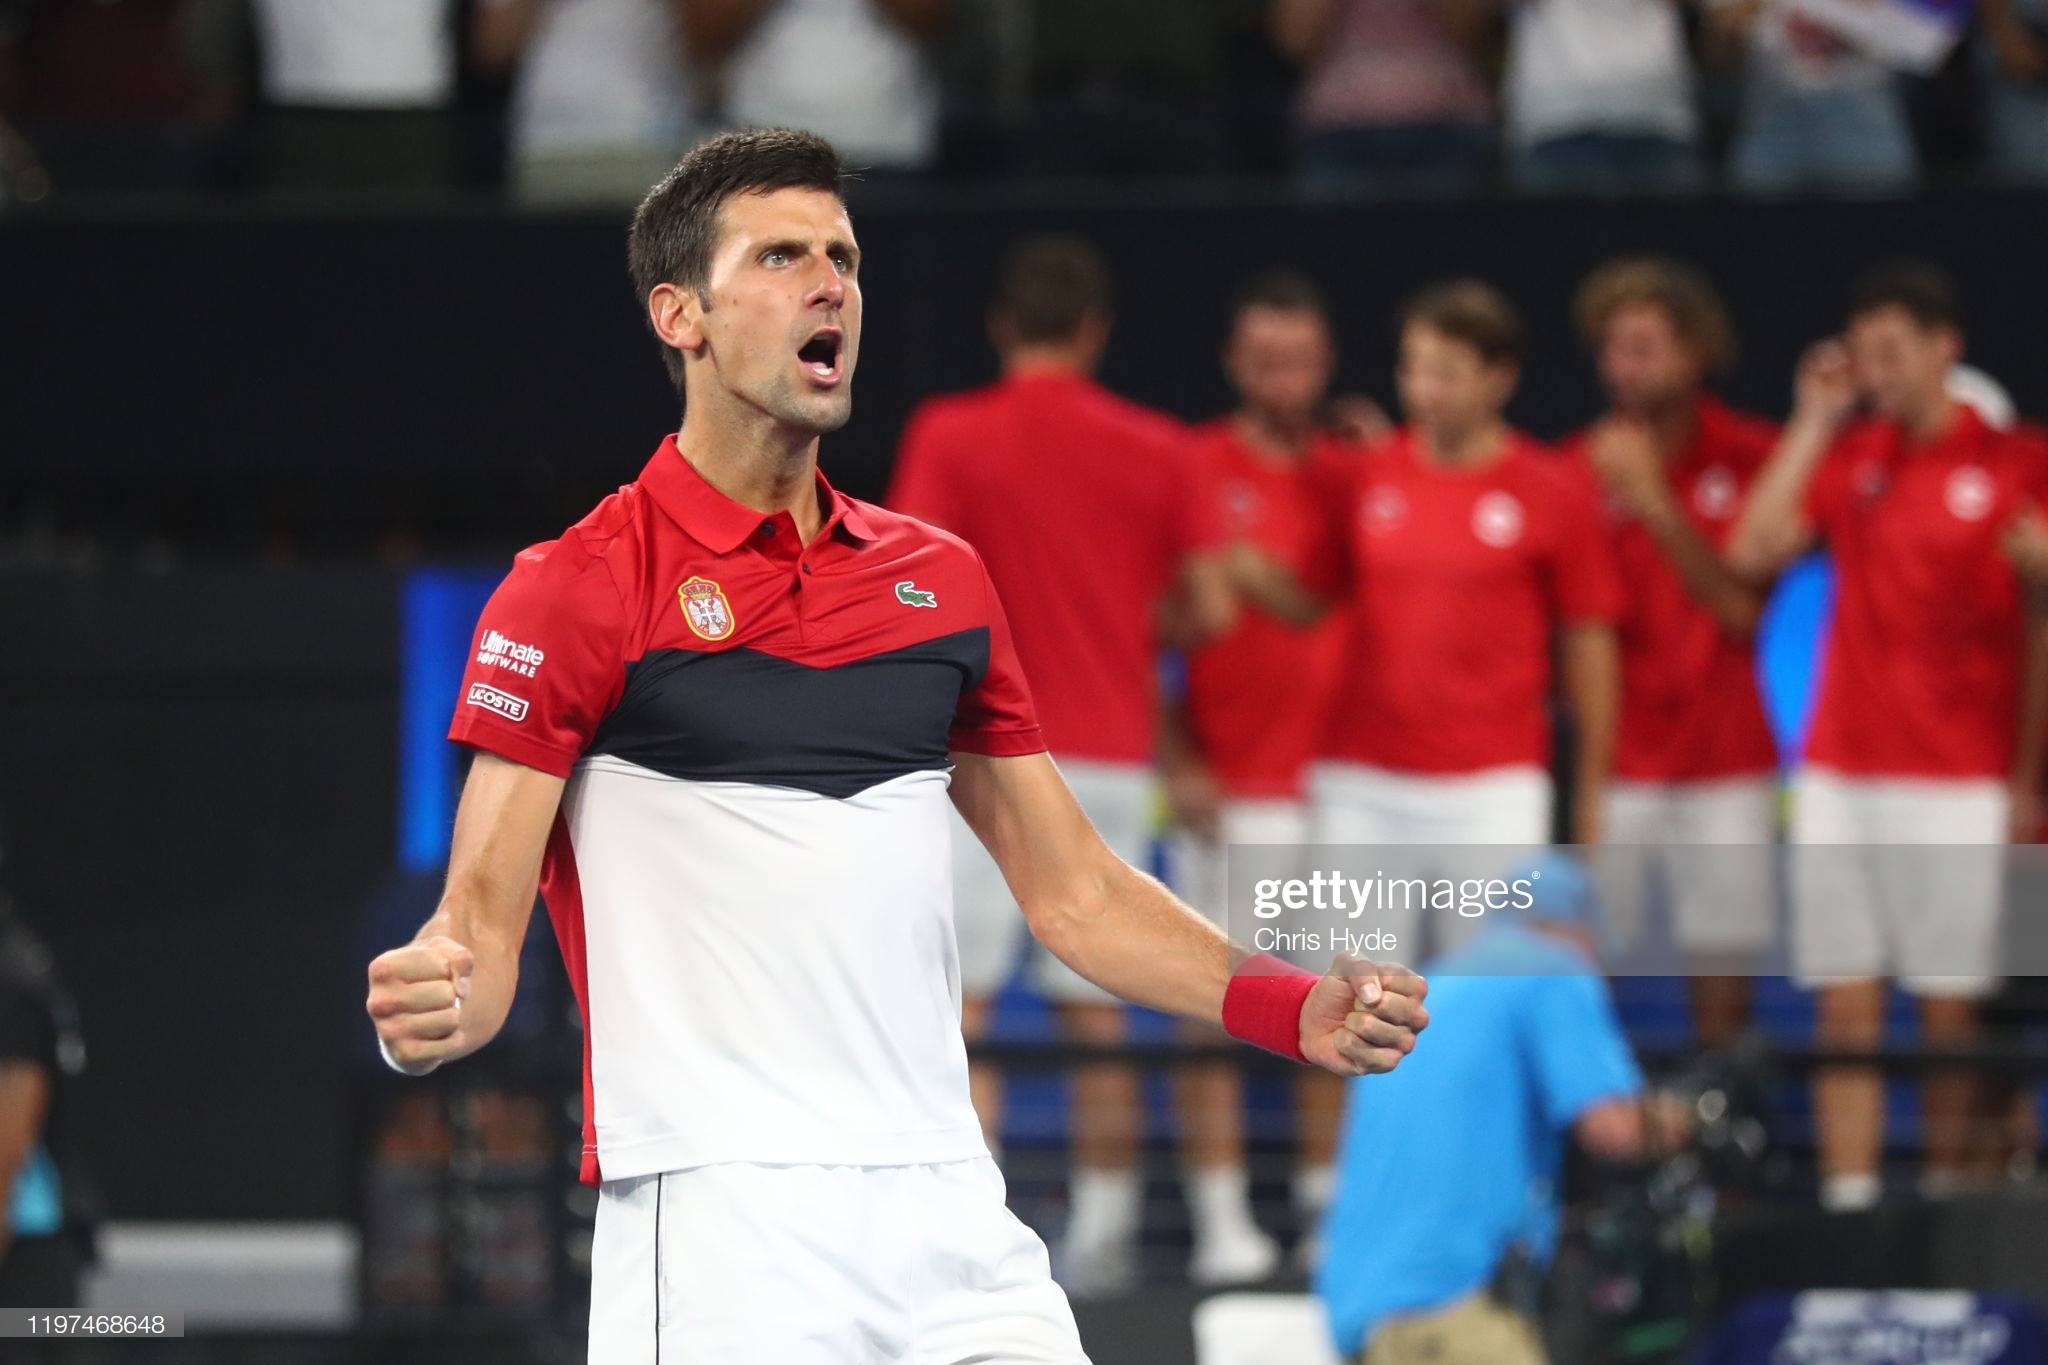 Novak Djokovic matches Sharapova donation to Australia bushfire relief